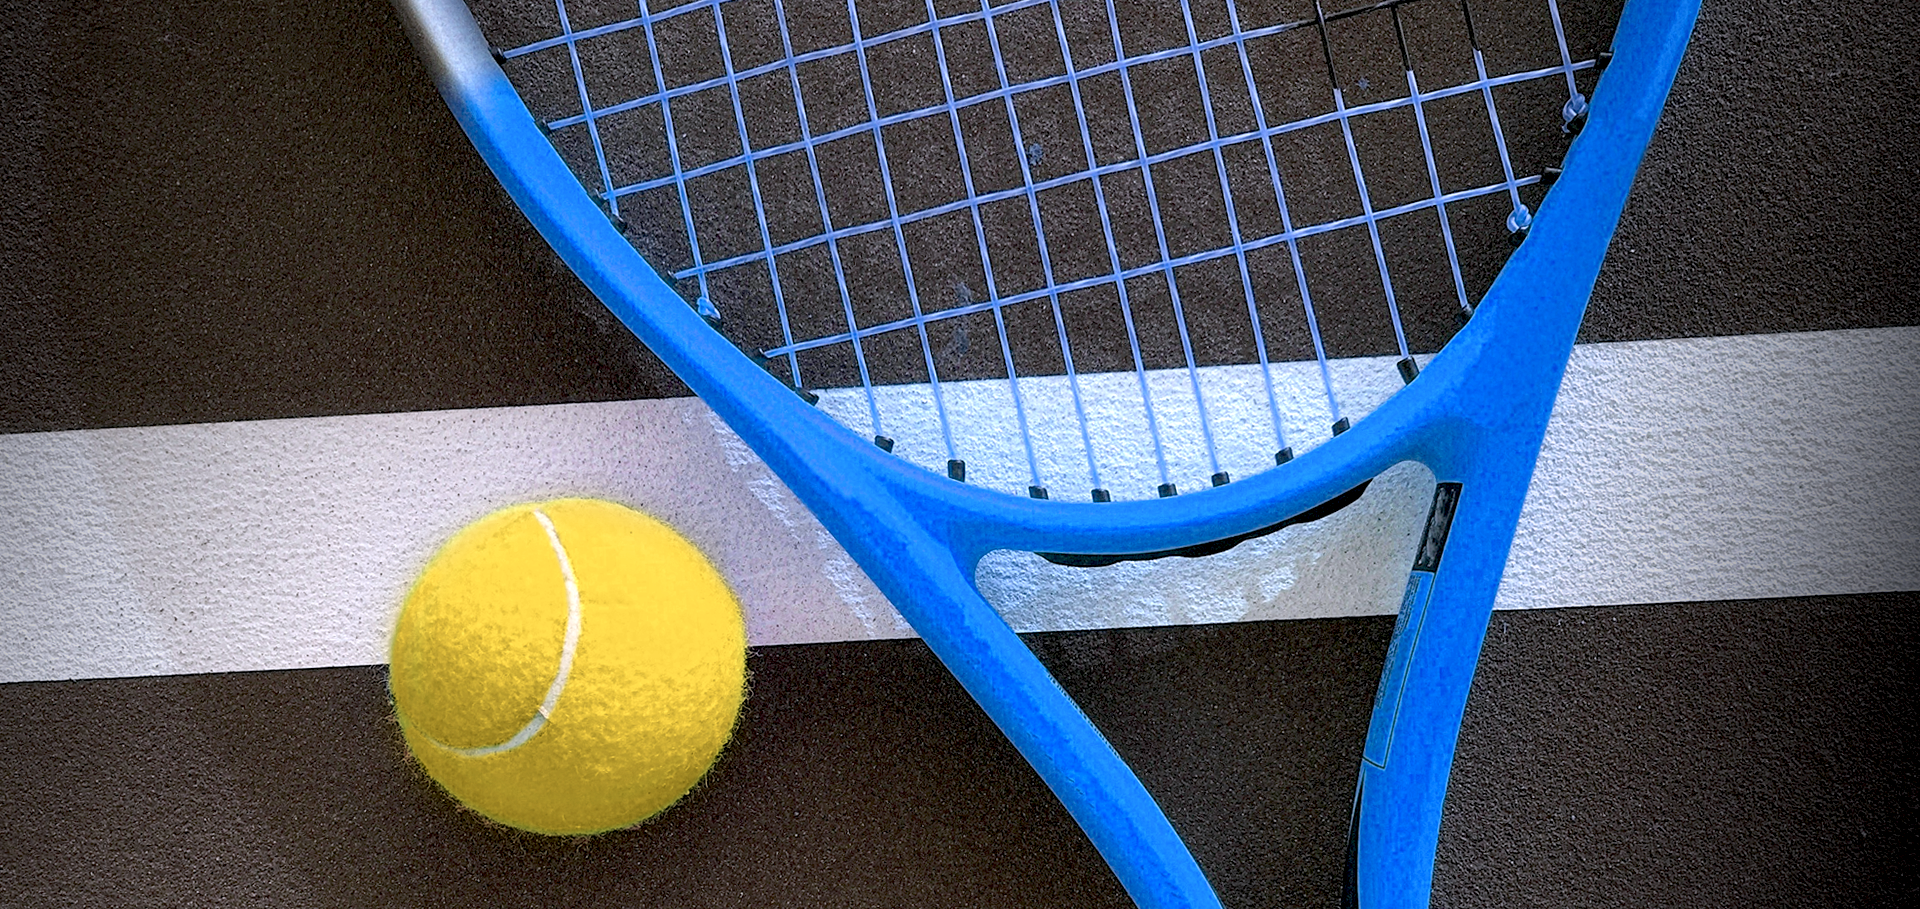 Entenda quantos sets tem uma partida de tênis em cada tipo de